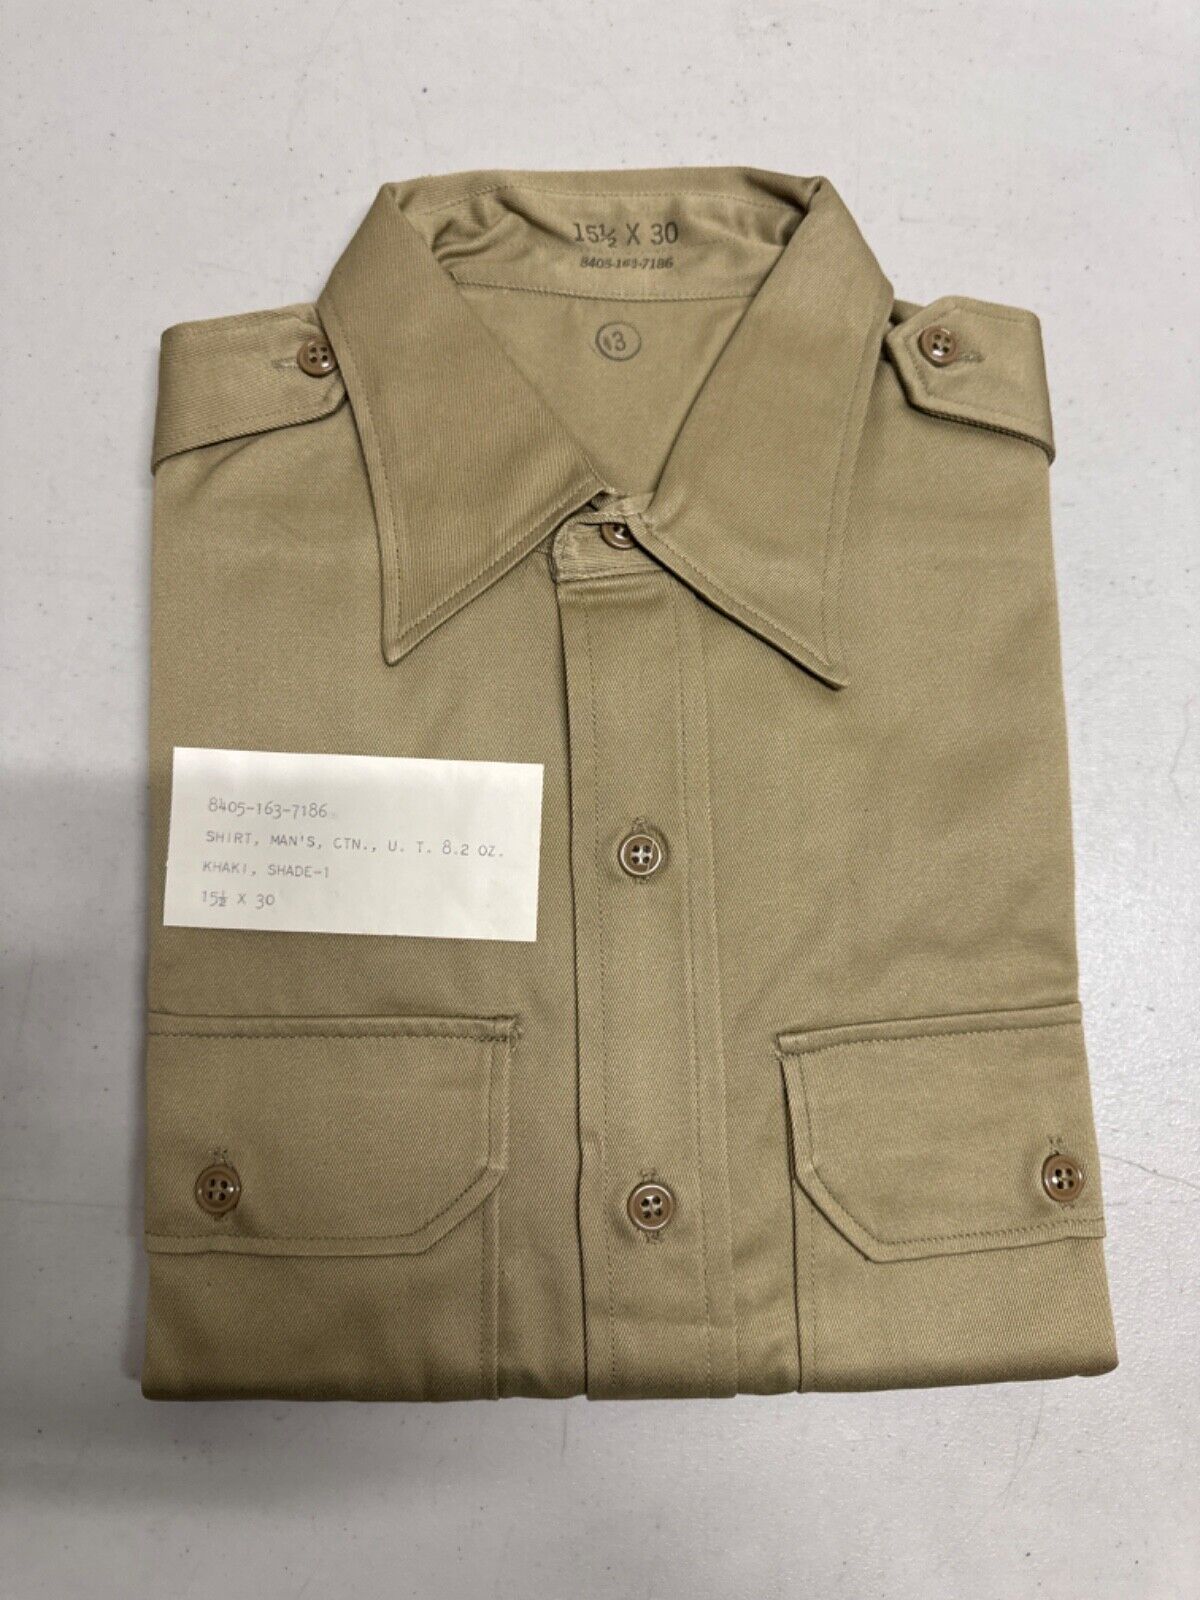 Vintage US Military Mens Kahki Dress Shirt 15 1/2 X 30